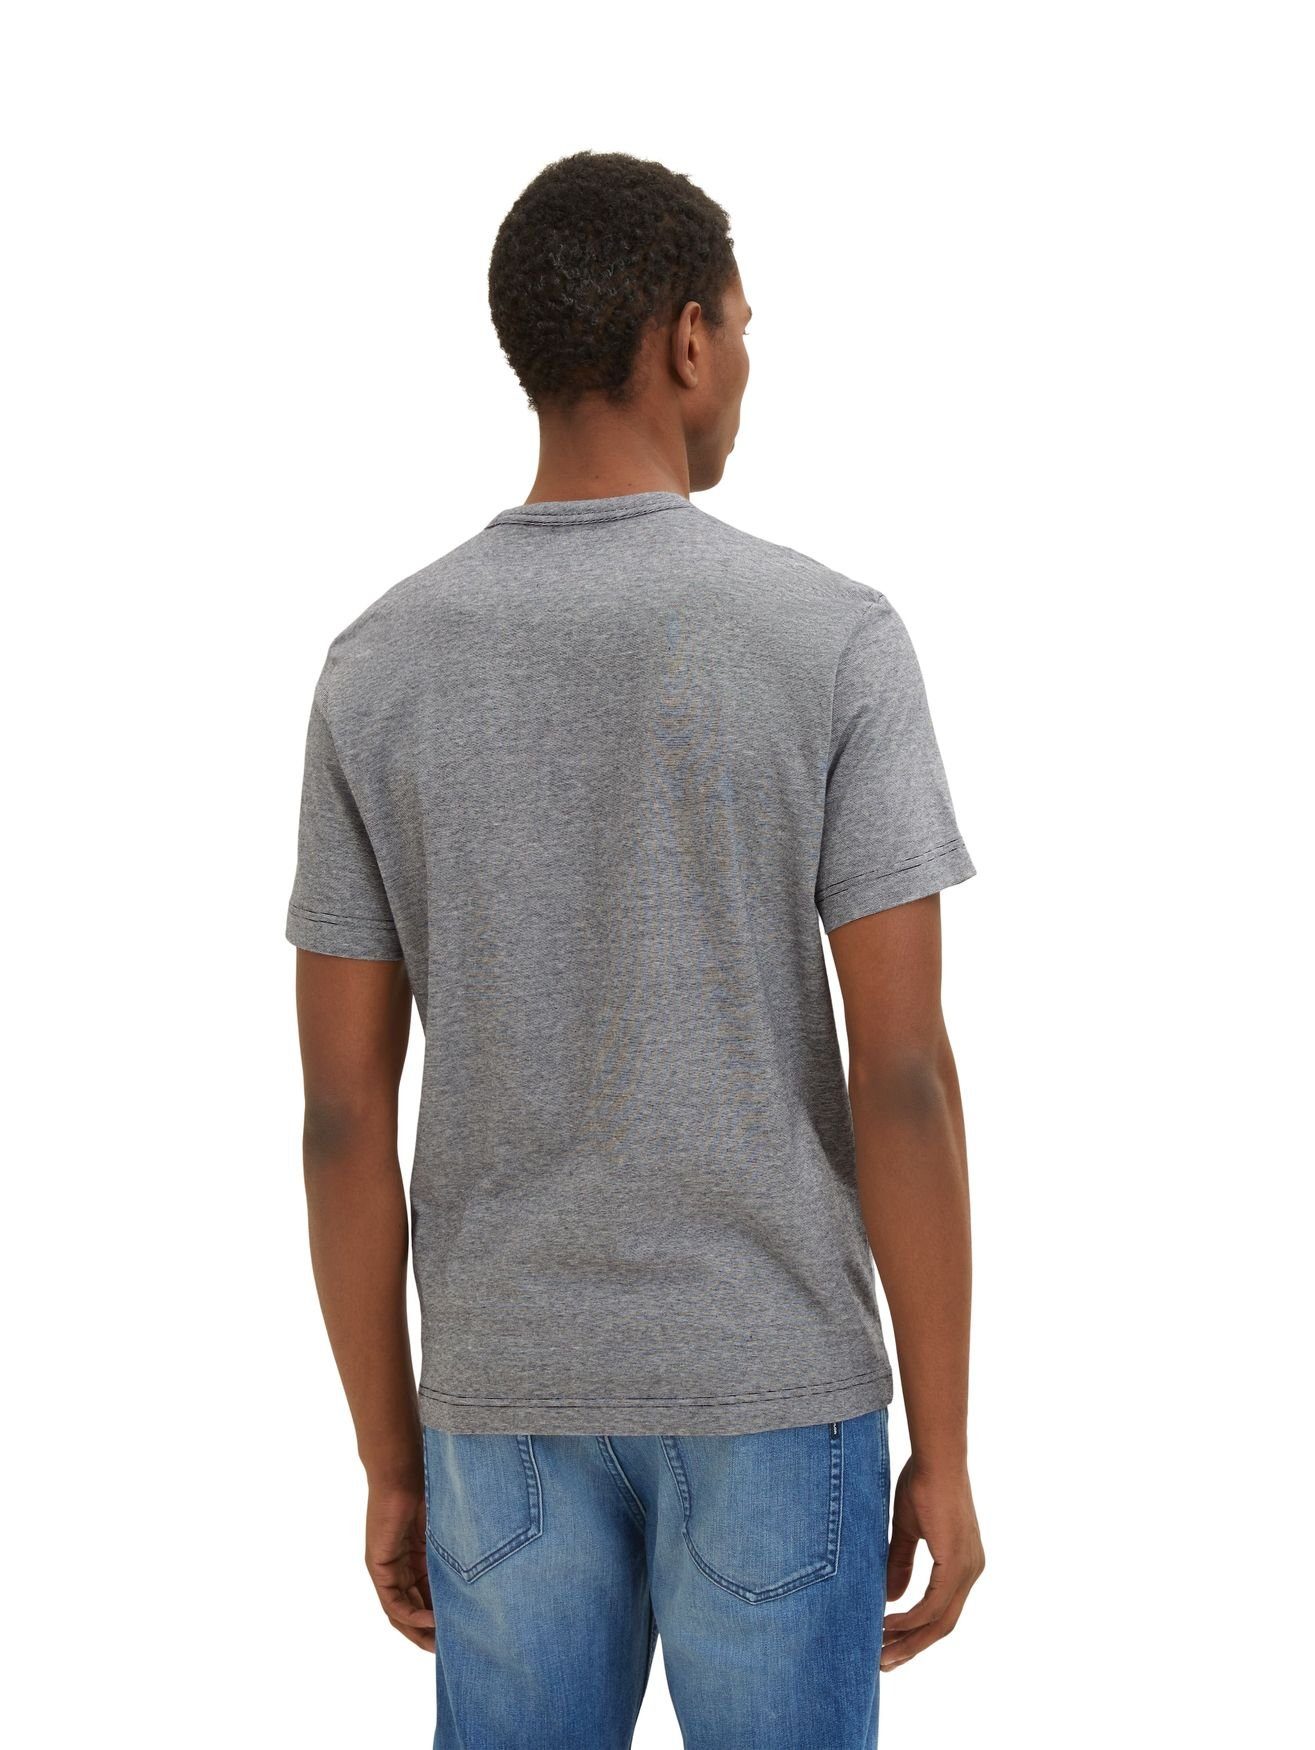 Print 5572 Shirt Bedrucktes Grau T-Shirt (1-tlg) mit Gestreiftes TOM in T-Shirt TAILOR Rundhals